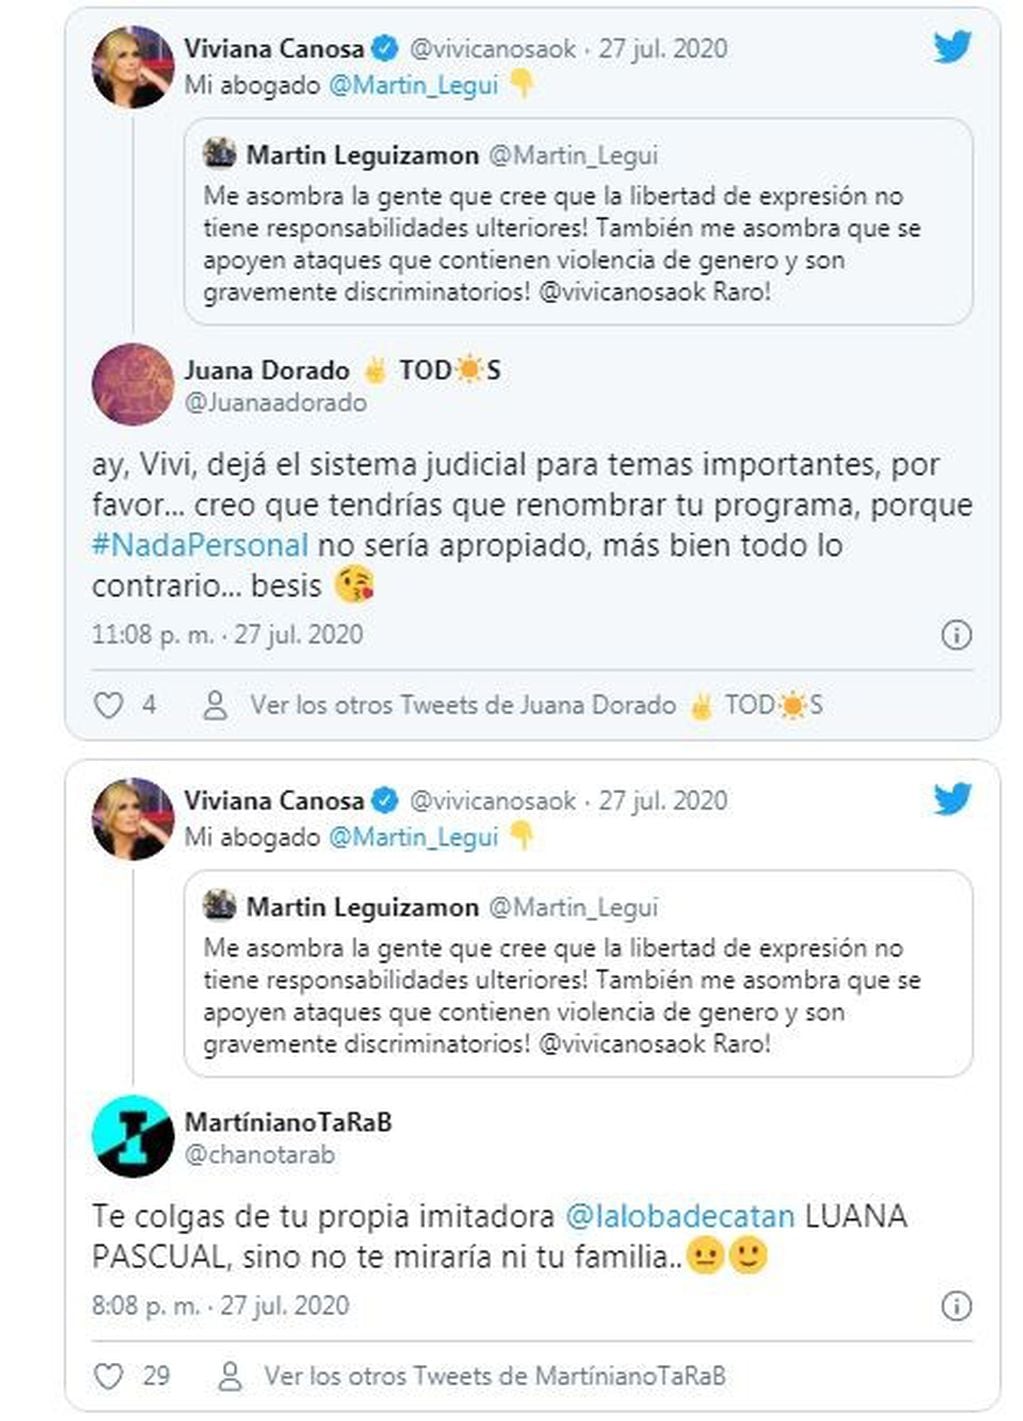 Viviana Canosa tweets